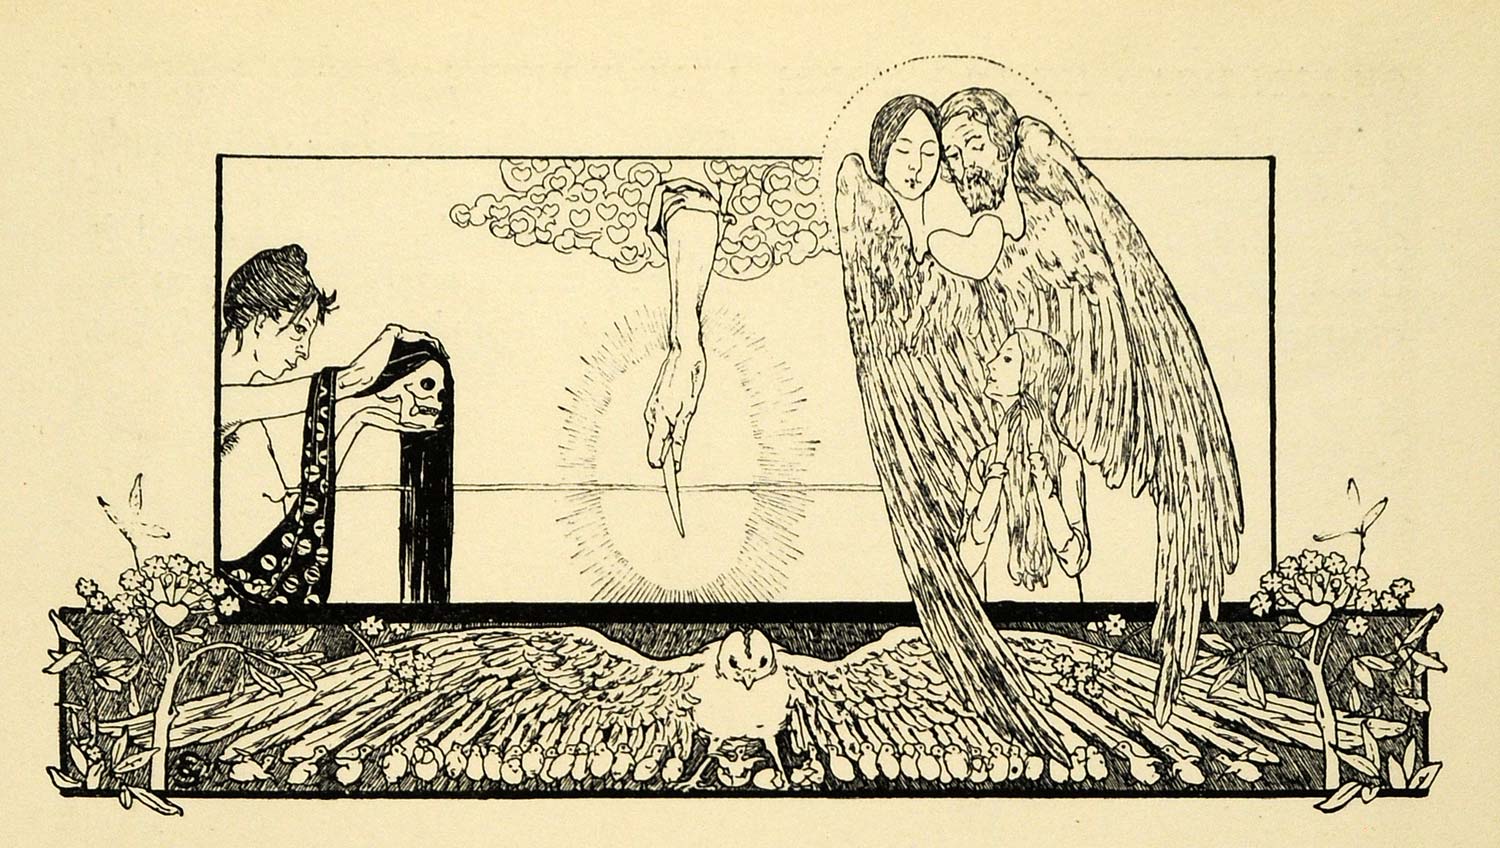 1920 Wood Engraving Carloz Schwabe Art Tailpiece White Dove Religious XDA7